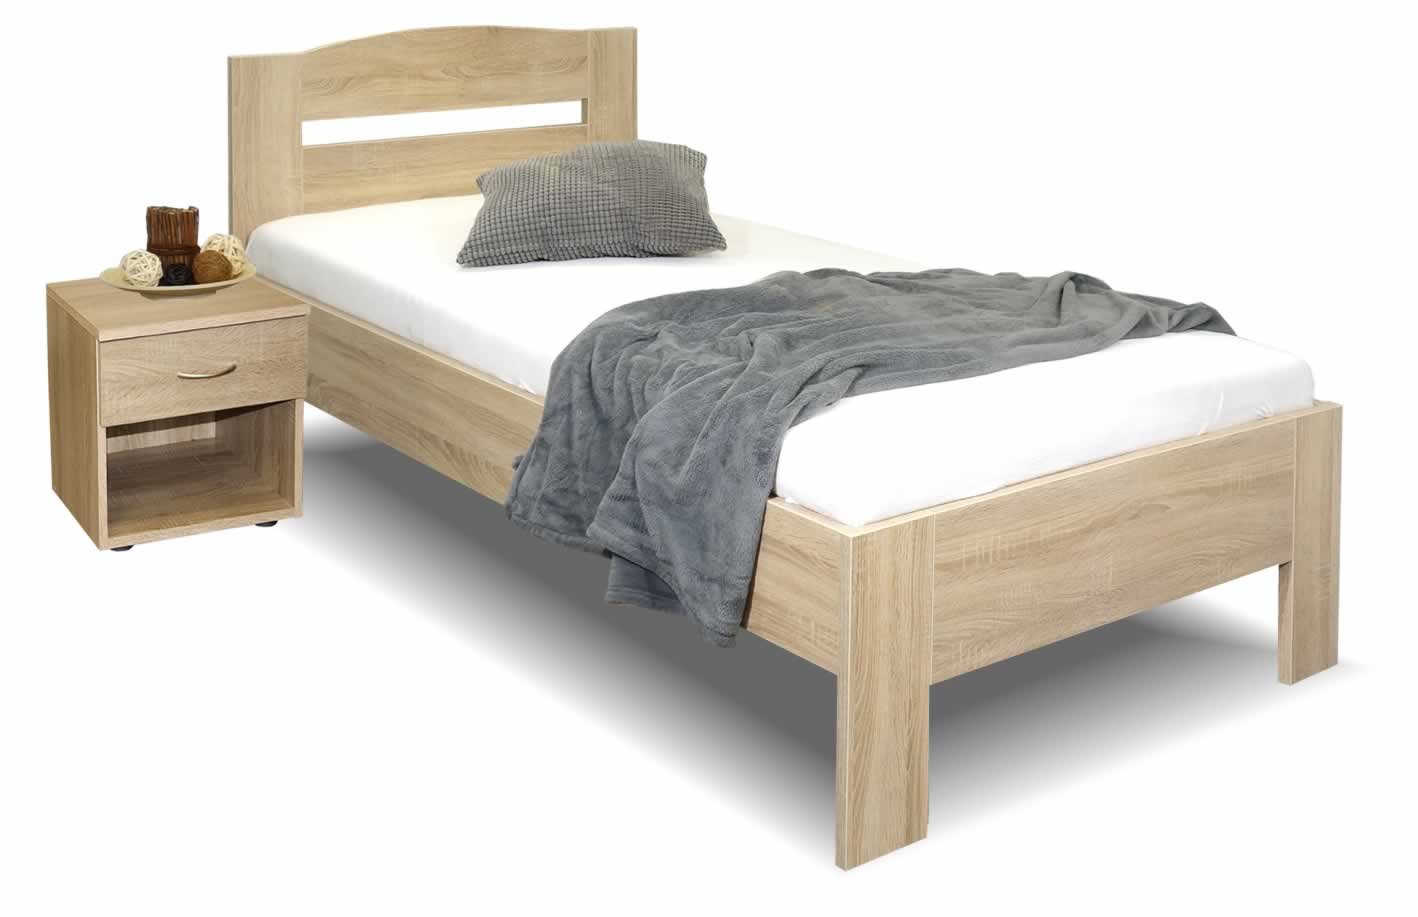 Zvýšená postel jednolůžko Maria, 80x220, 90x220